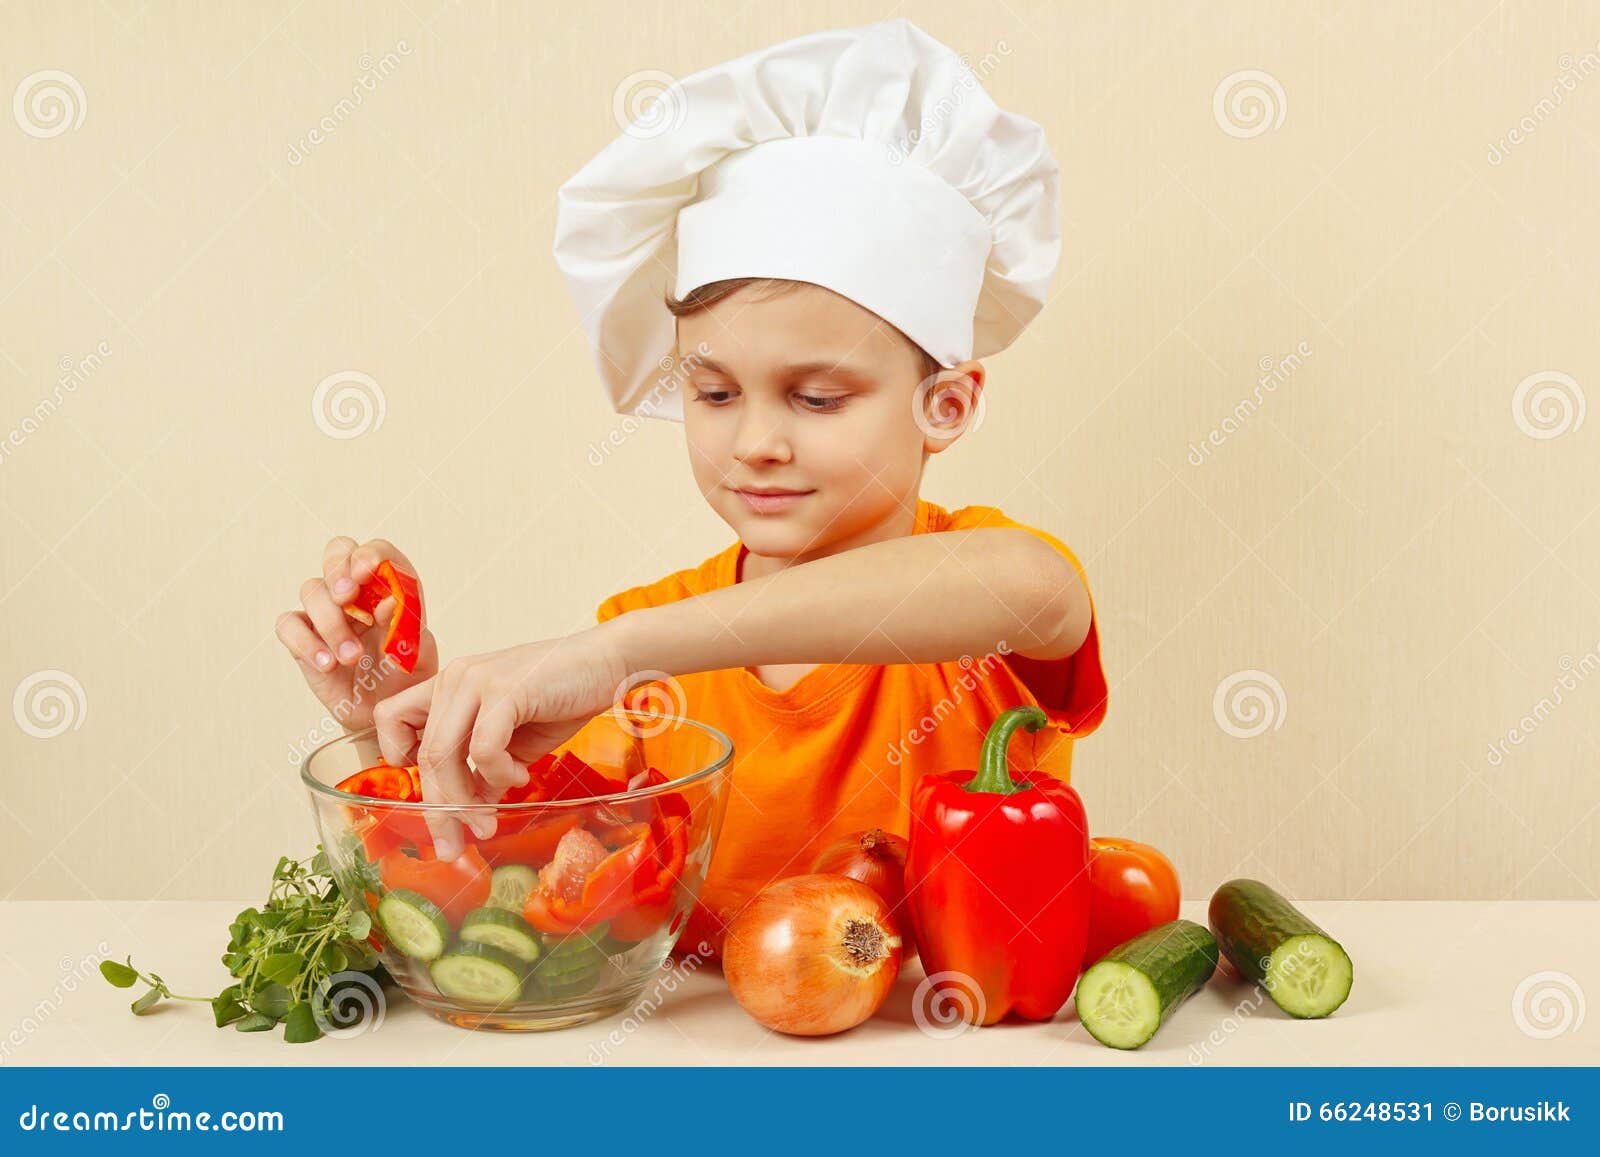 厨师帽子的小男孩在碗投入沙拉的切好的菜